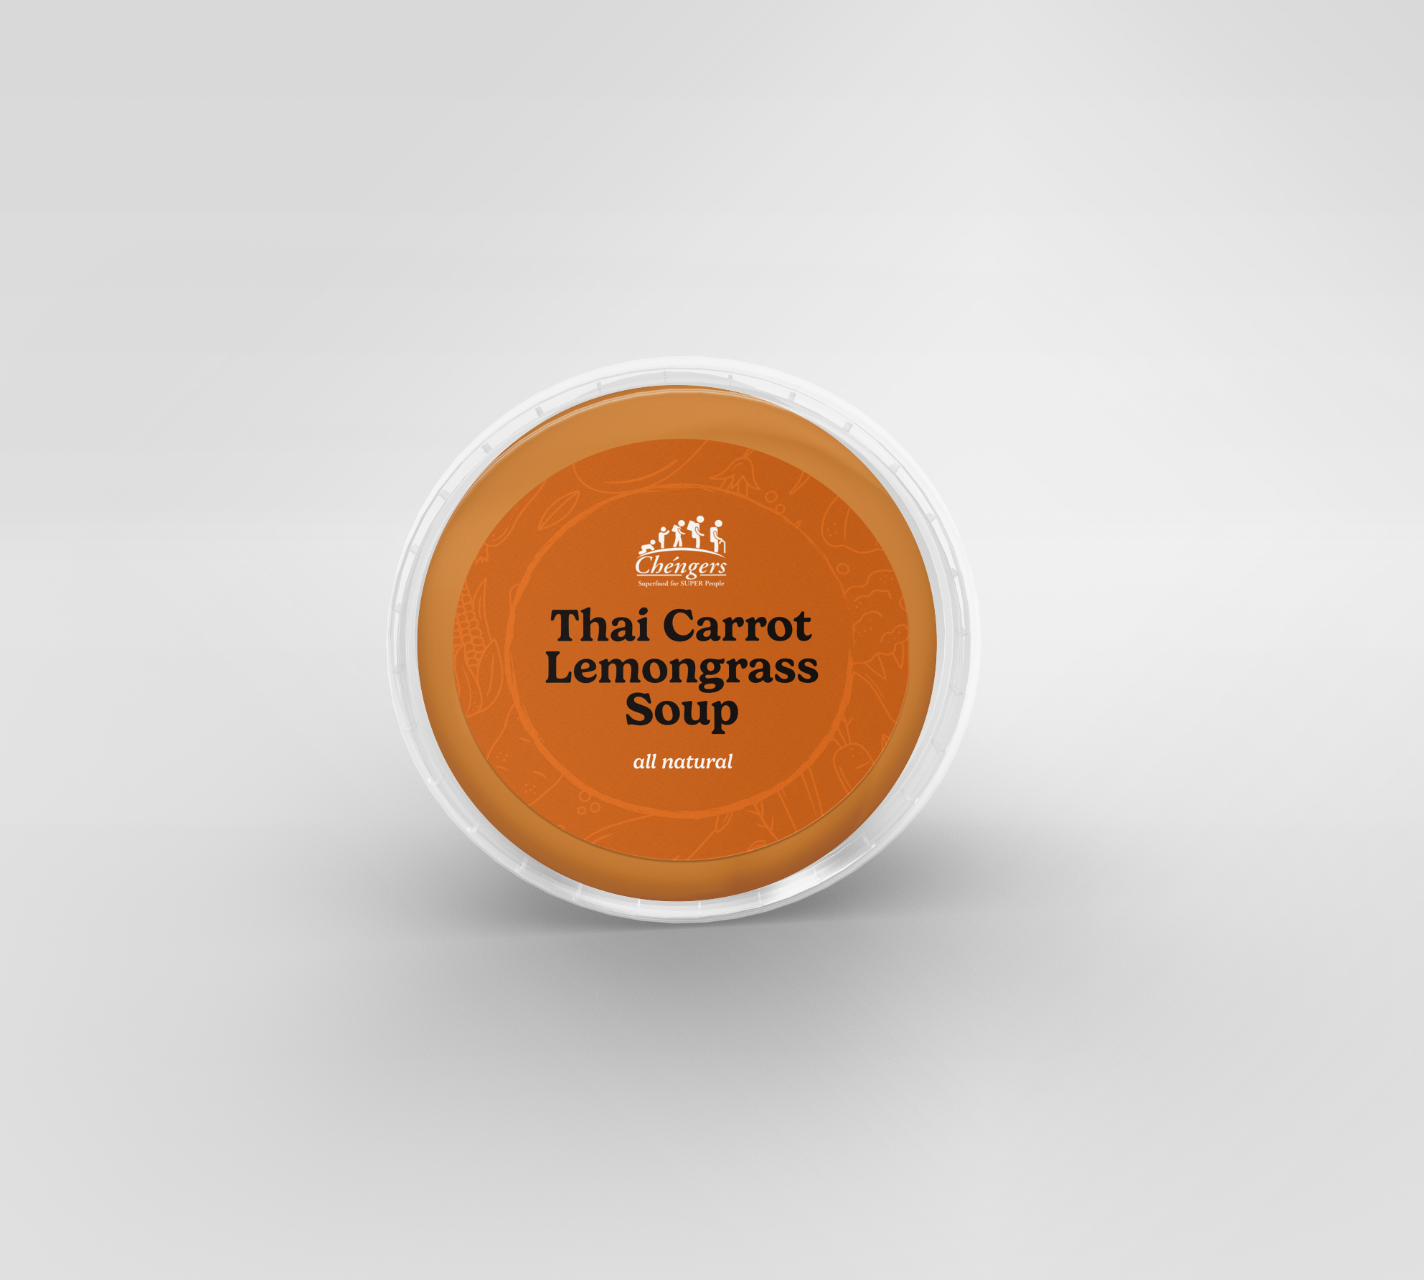 Thai Carrot Lemongrass